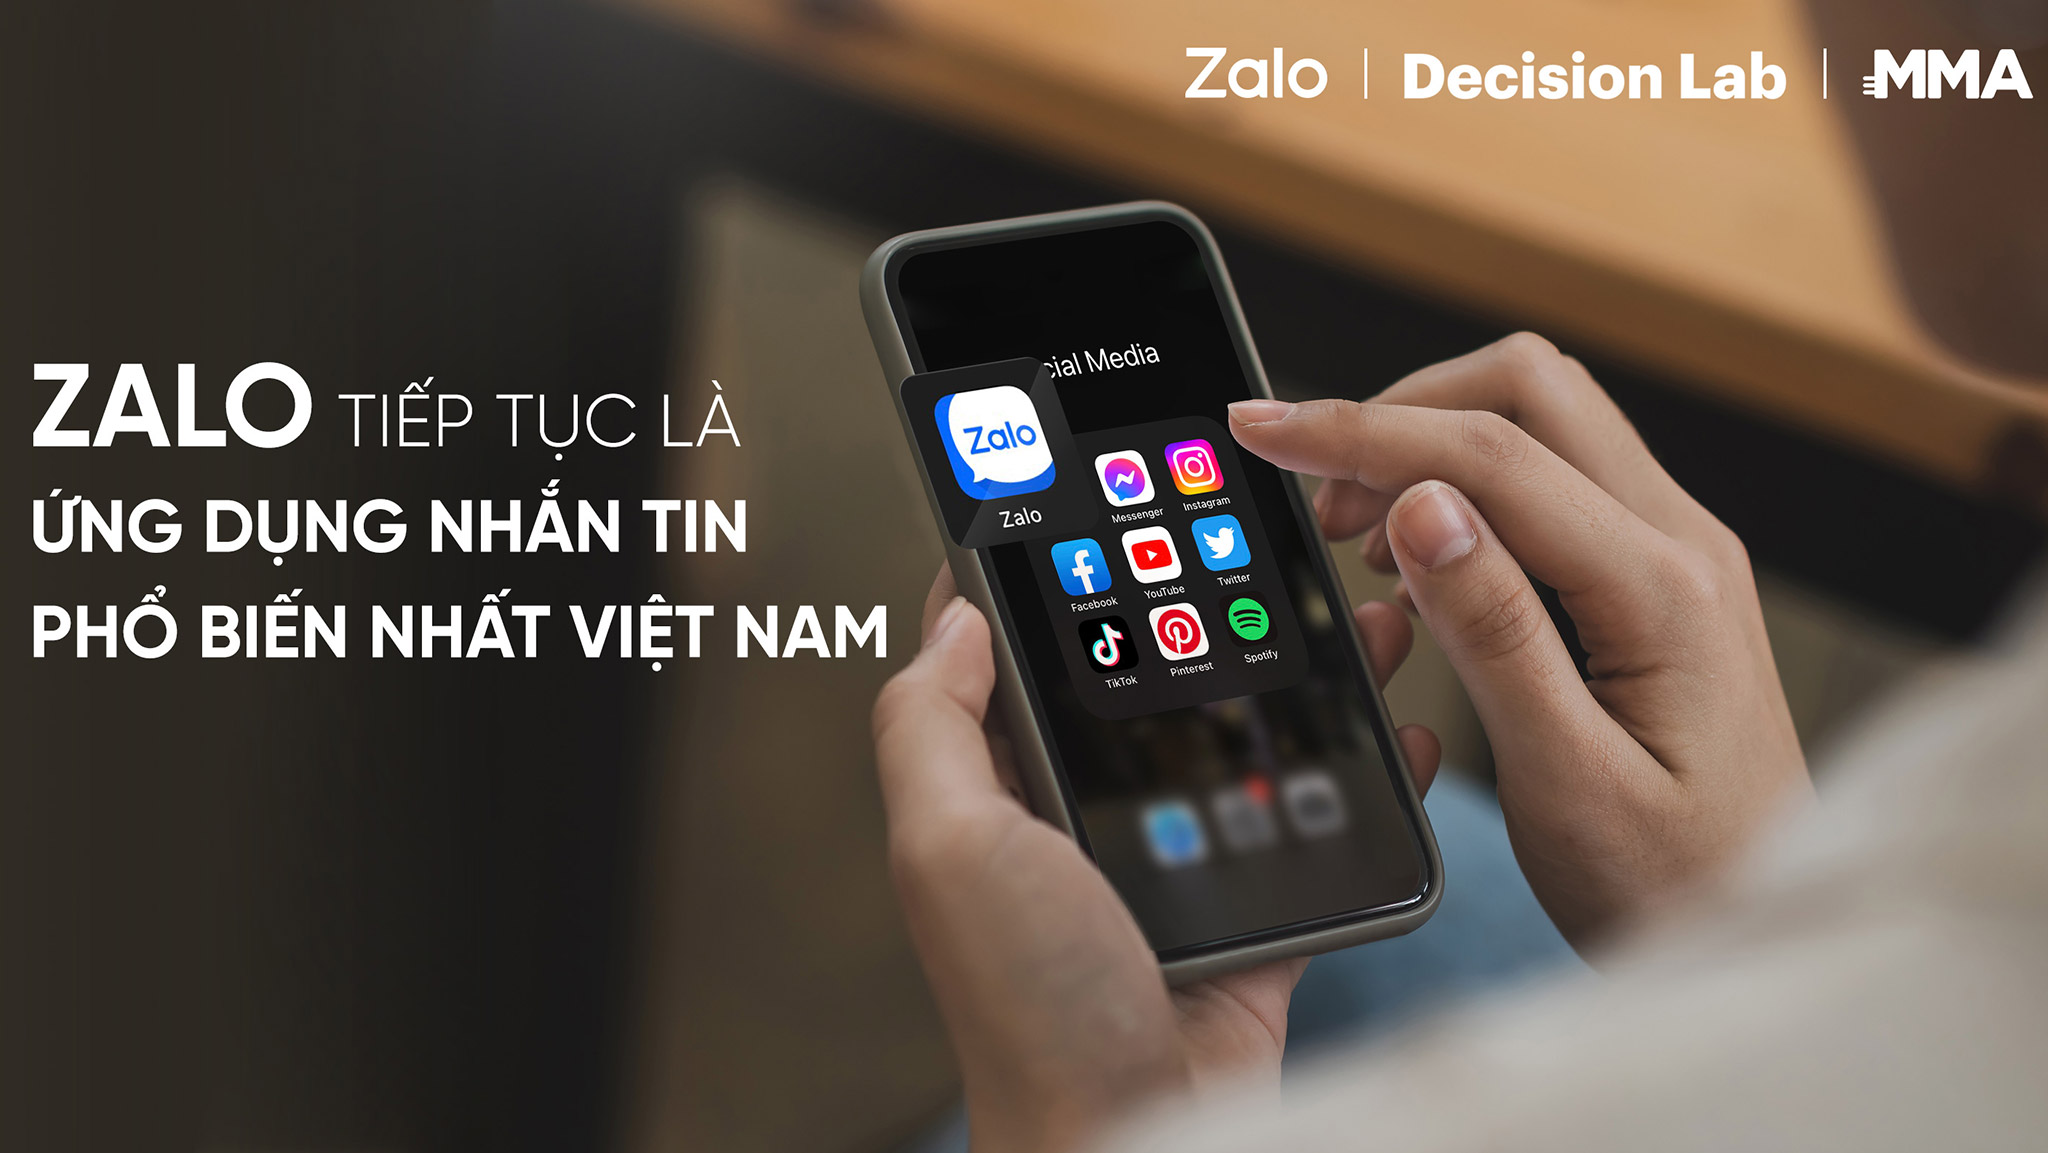 Zalo tiếp tục là ứng dụng nhắn tin phổ biến nhất Việt Nam năm 2022